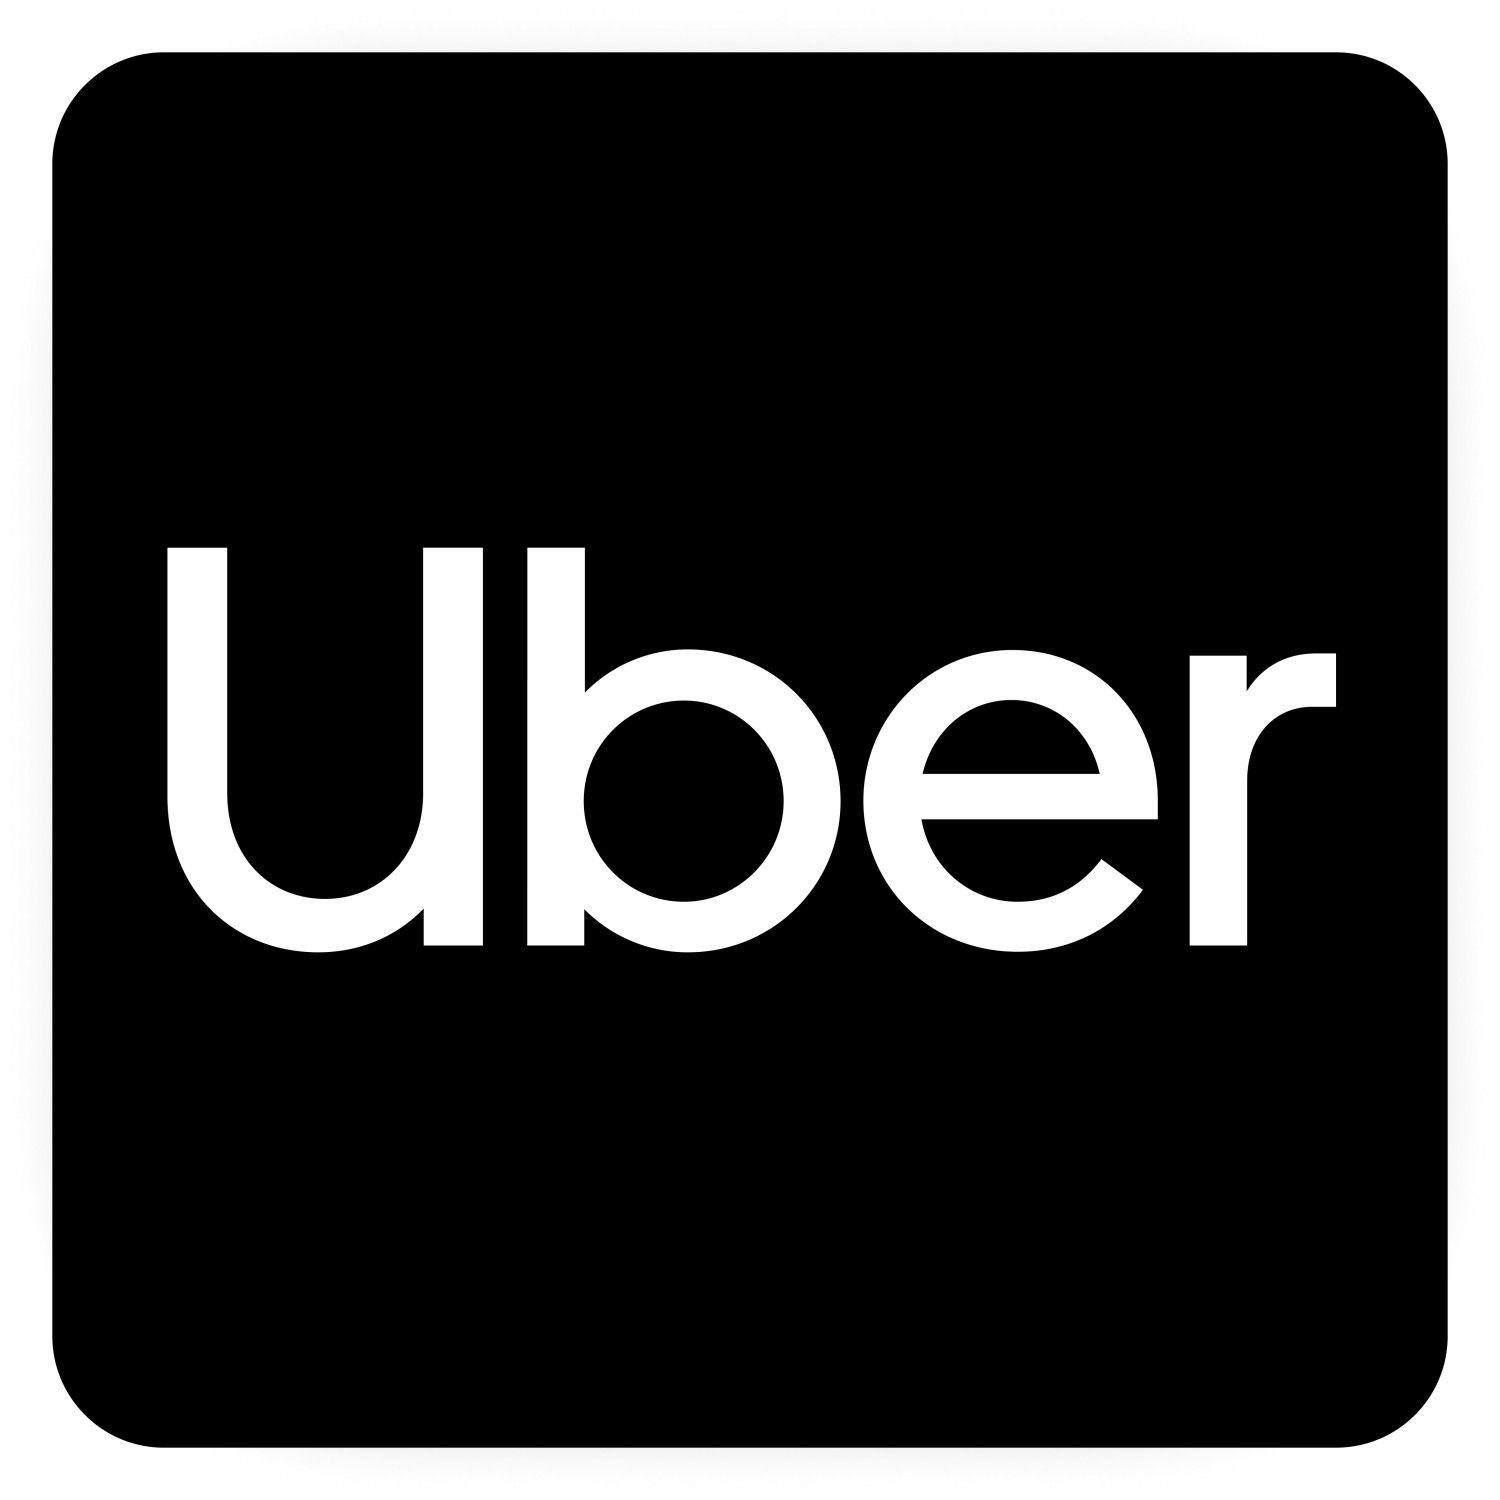 Uber App Logo - Uber is getting a new look | TechCrunch